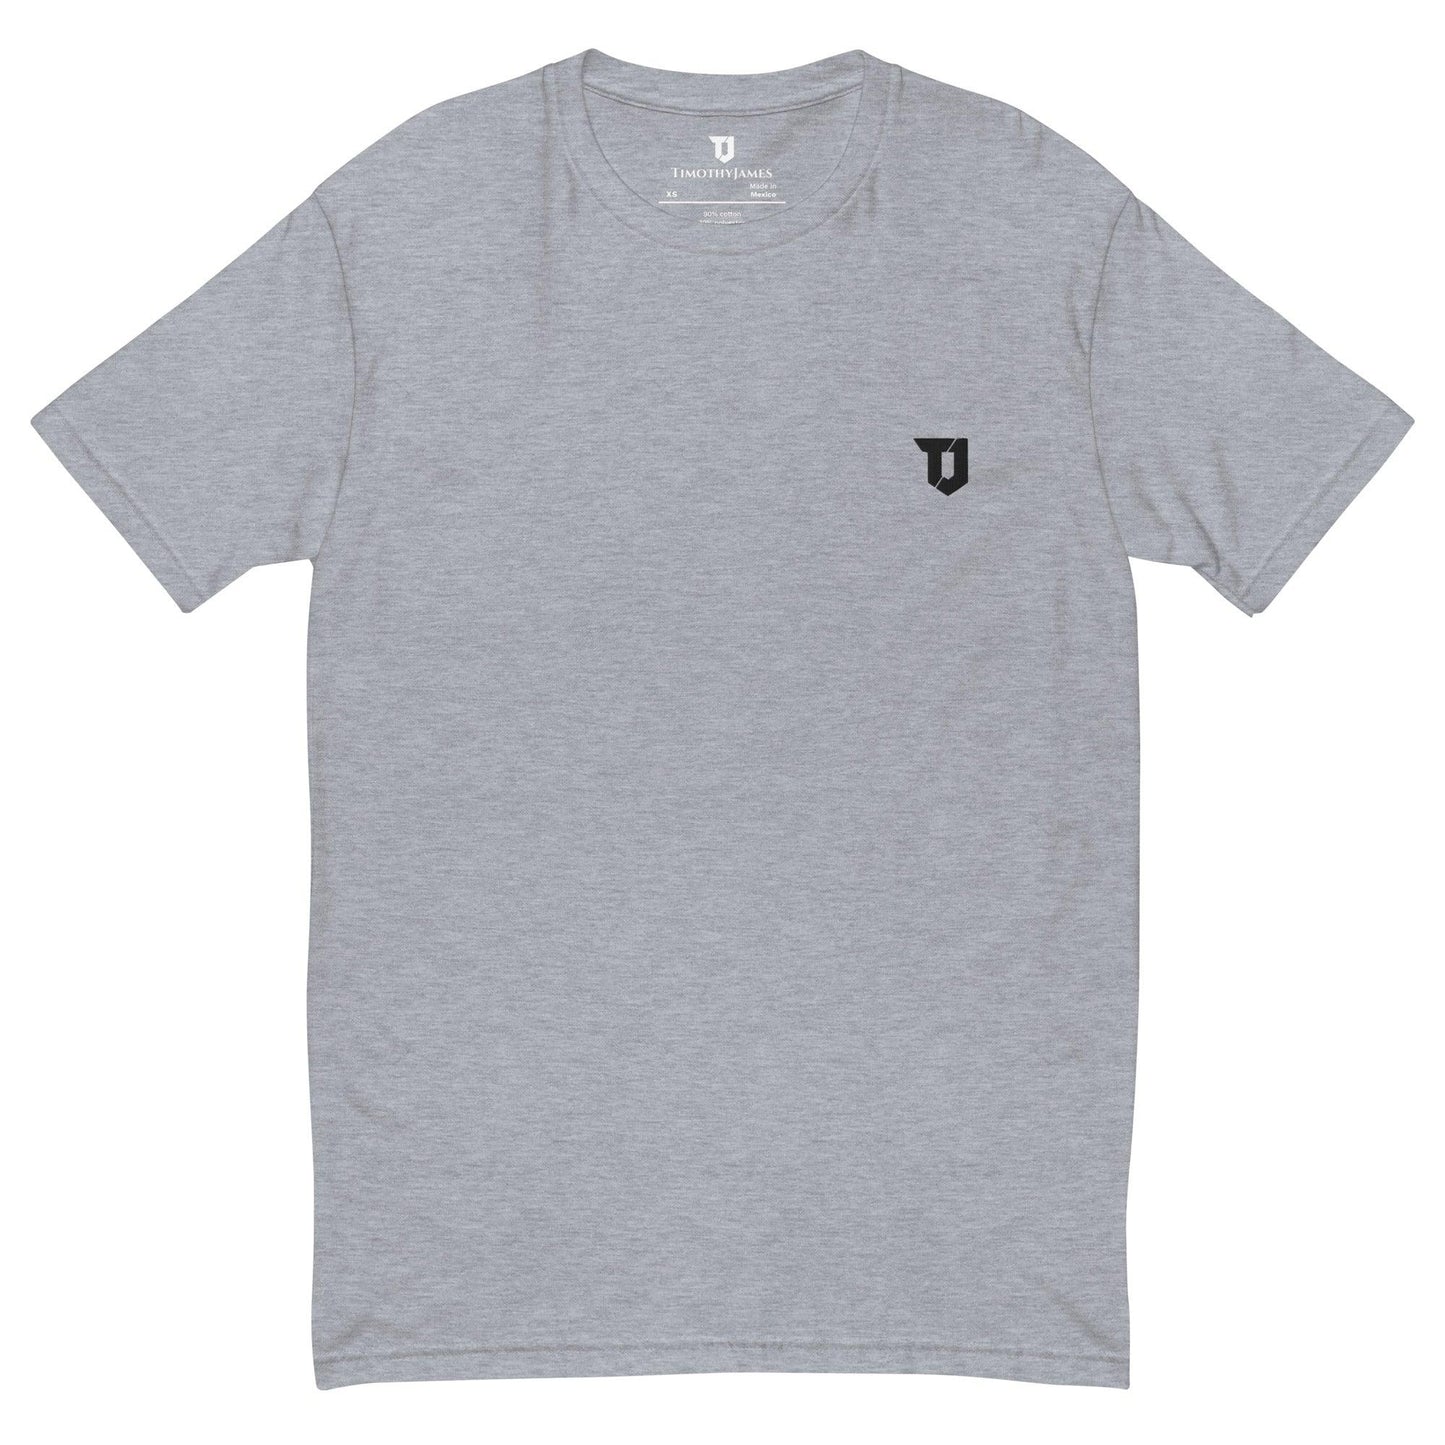 TimothyJames Core T-Shirt Grey - TimothyJames